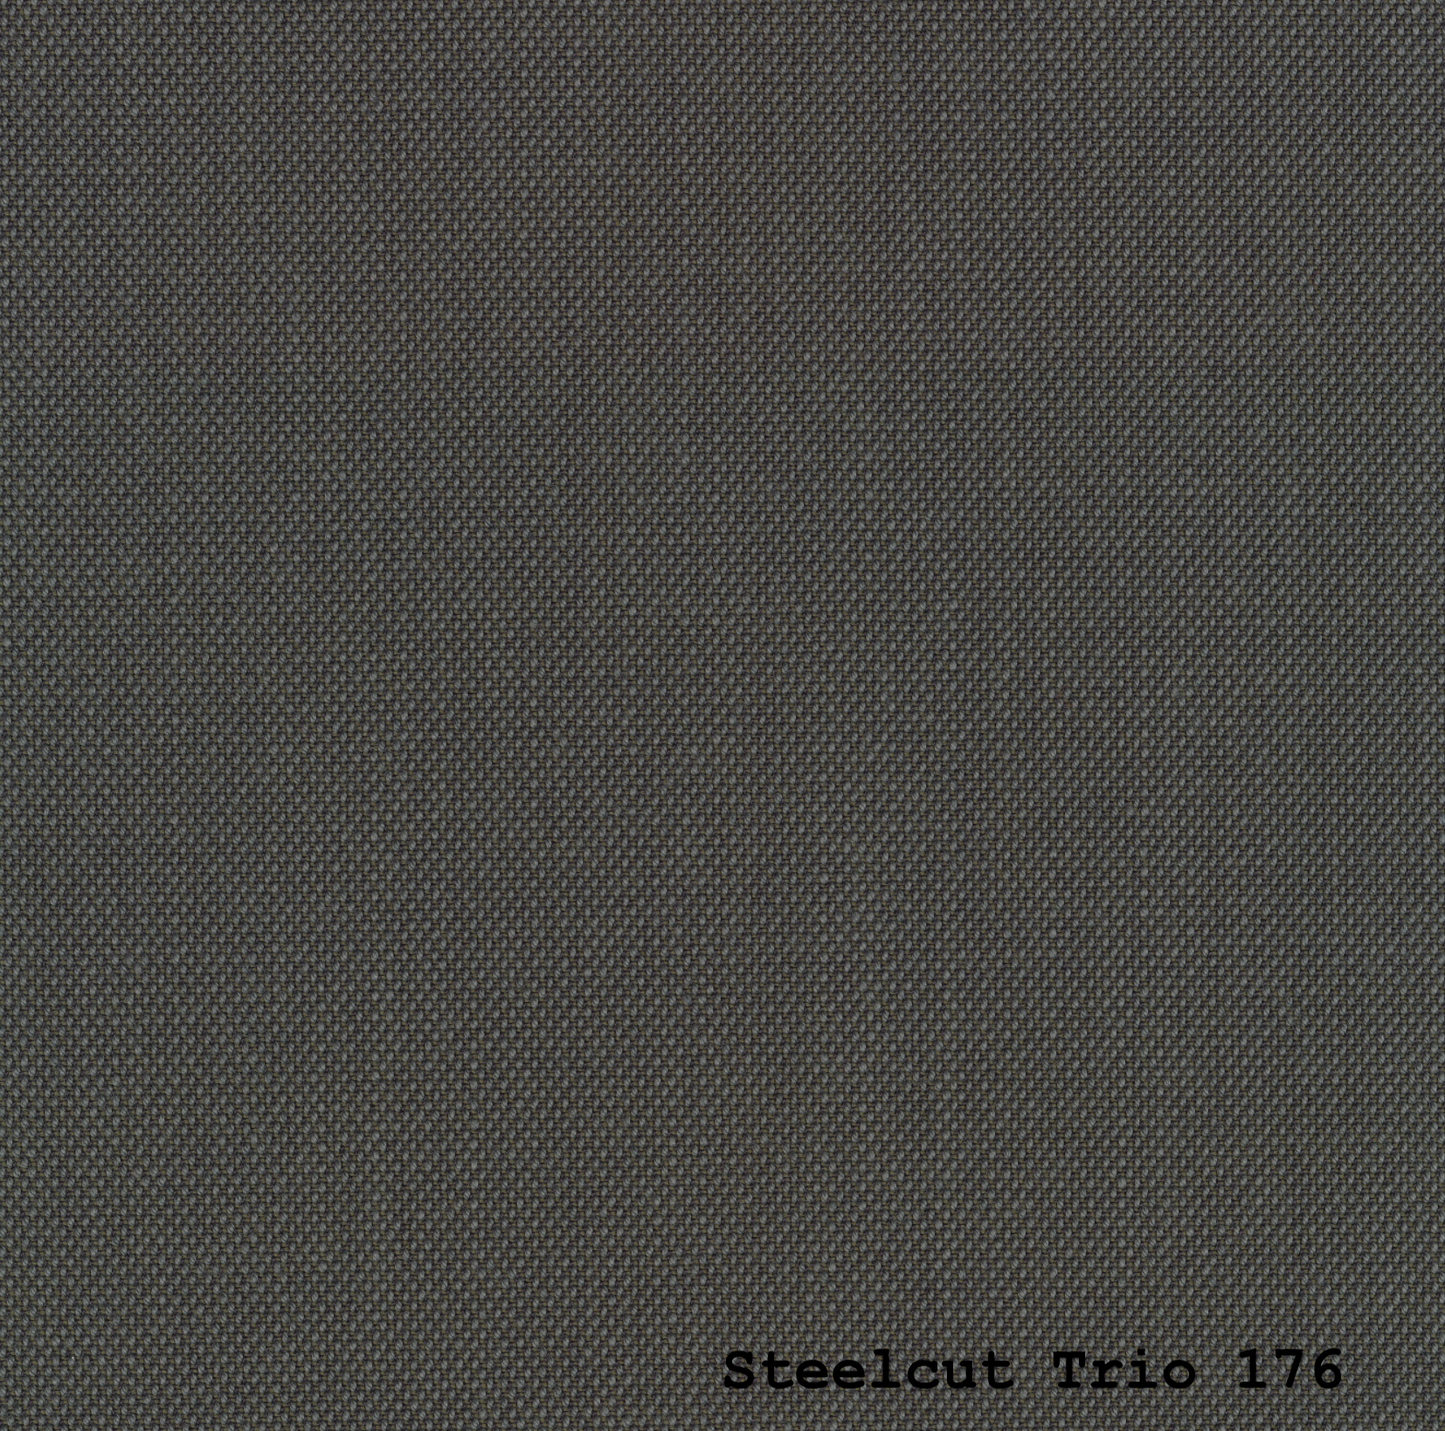 Nye hynder til Børge Mogensen 2218 af Steelcut Trio 3 fra Kvadrat